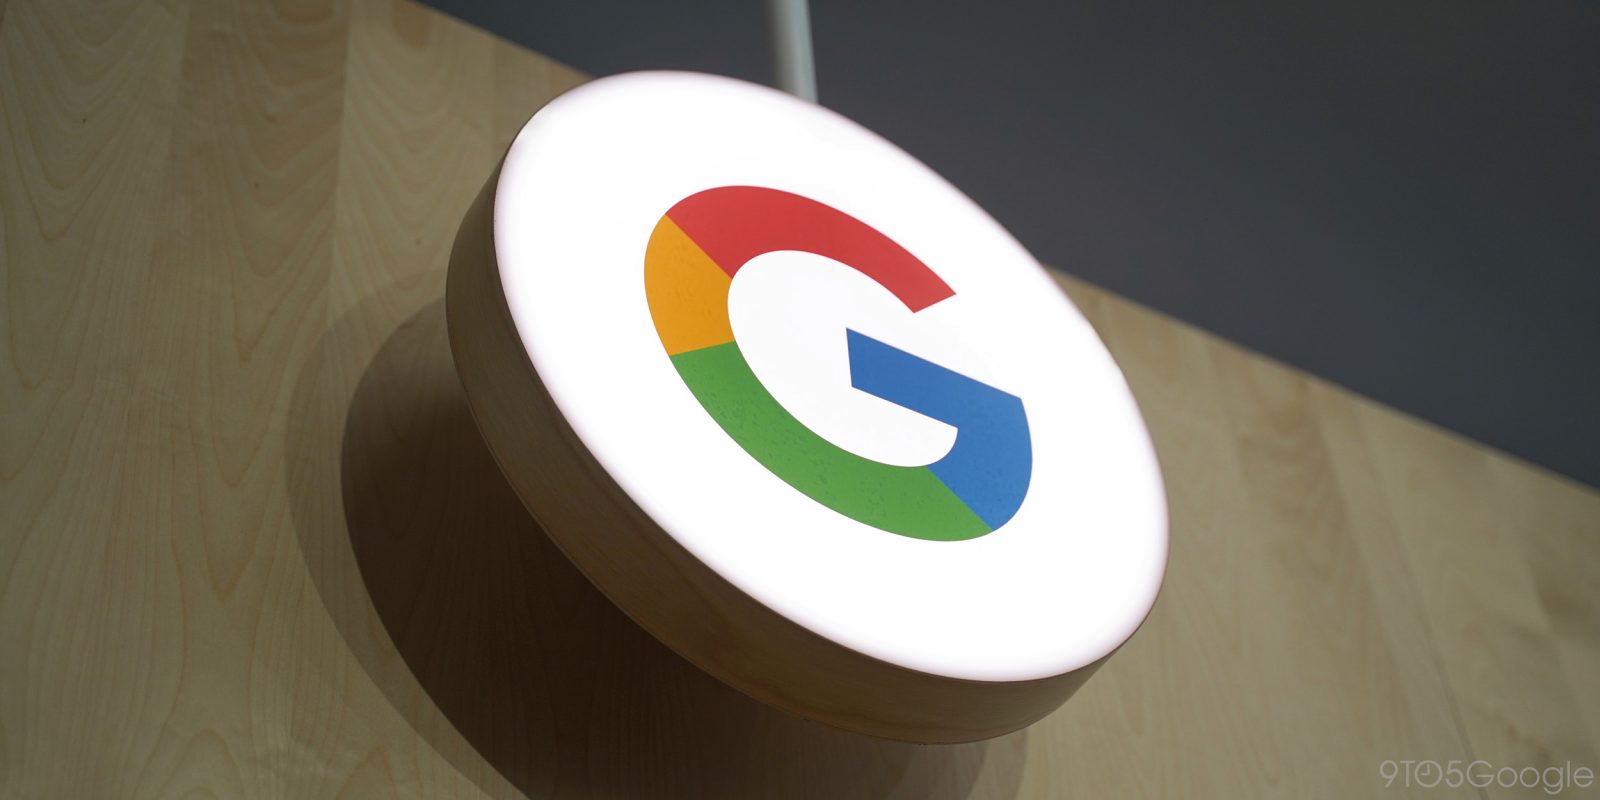  Google lança chaves de acesso para login nas contas